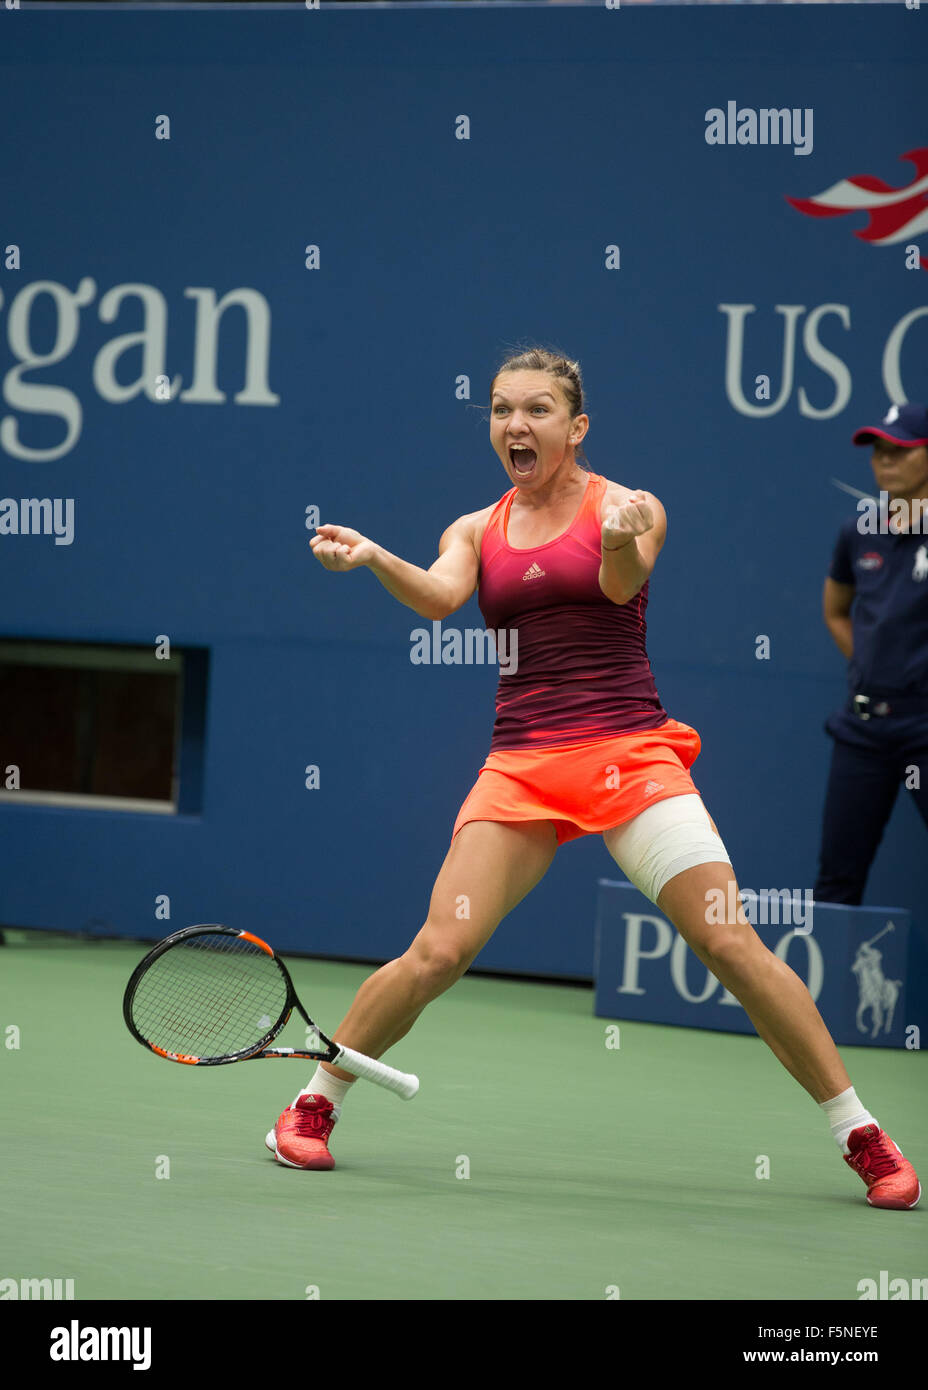 US Open 2015, l'USTA Billie Jean National Tennis Center, New York, : Simona (ROU) célèbre. Banque D'Images